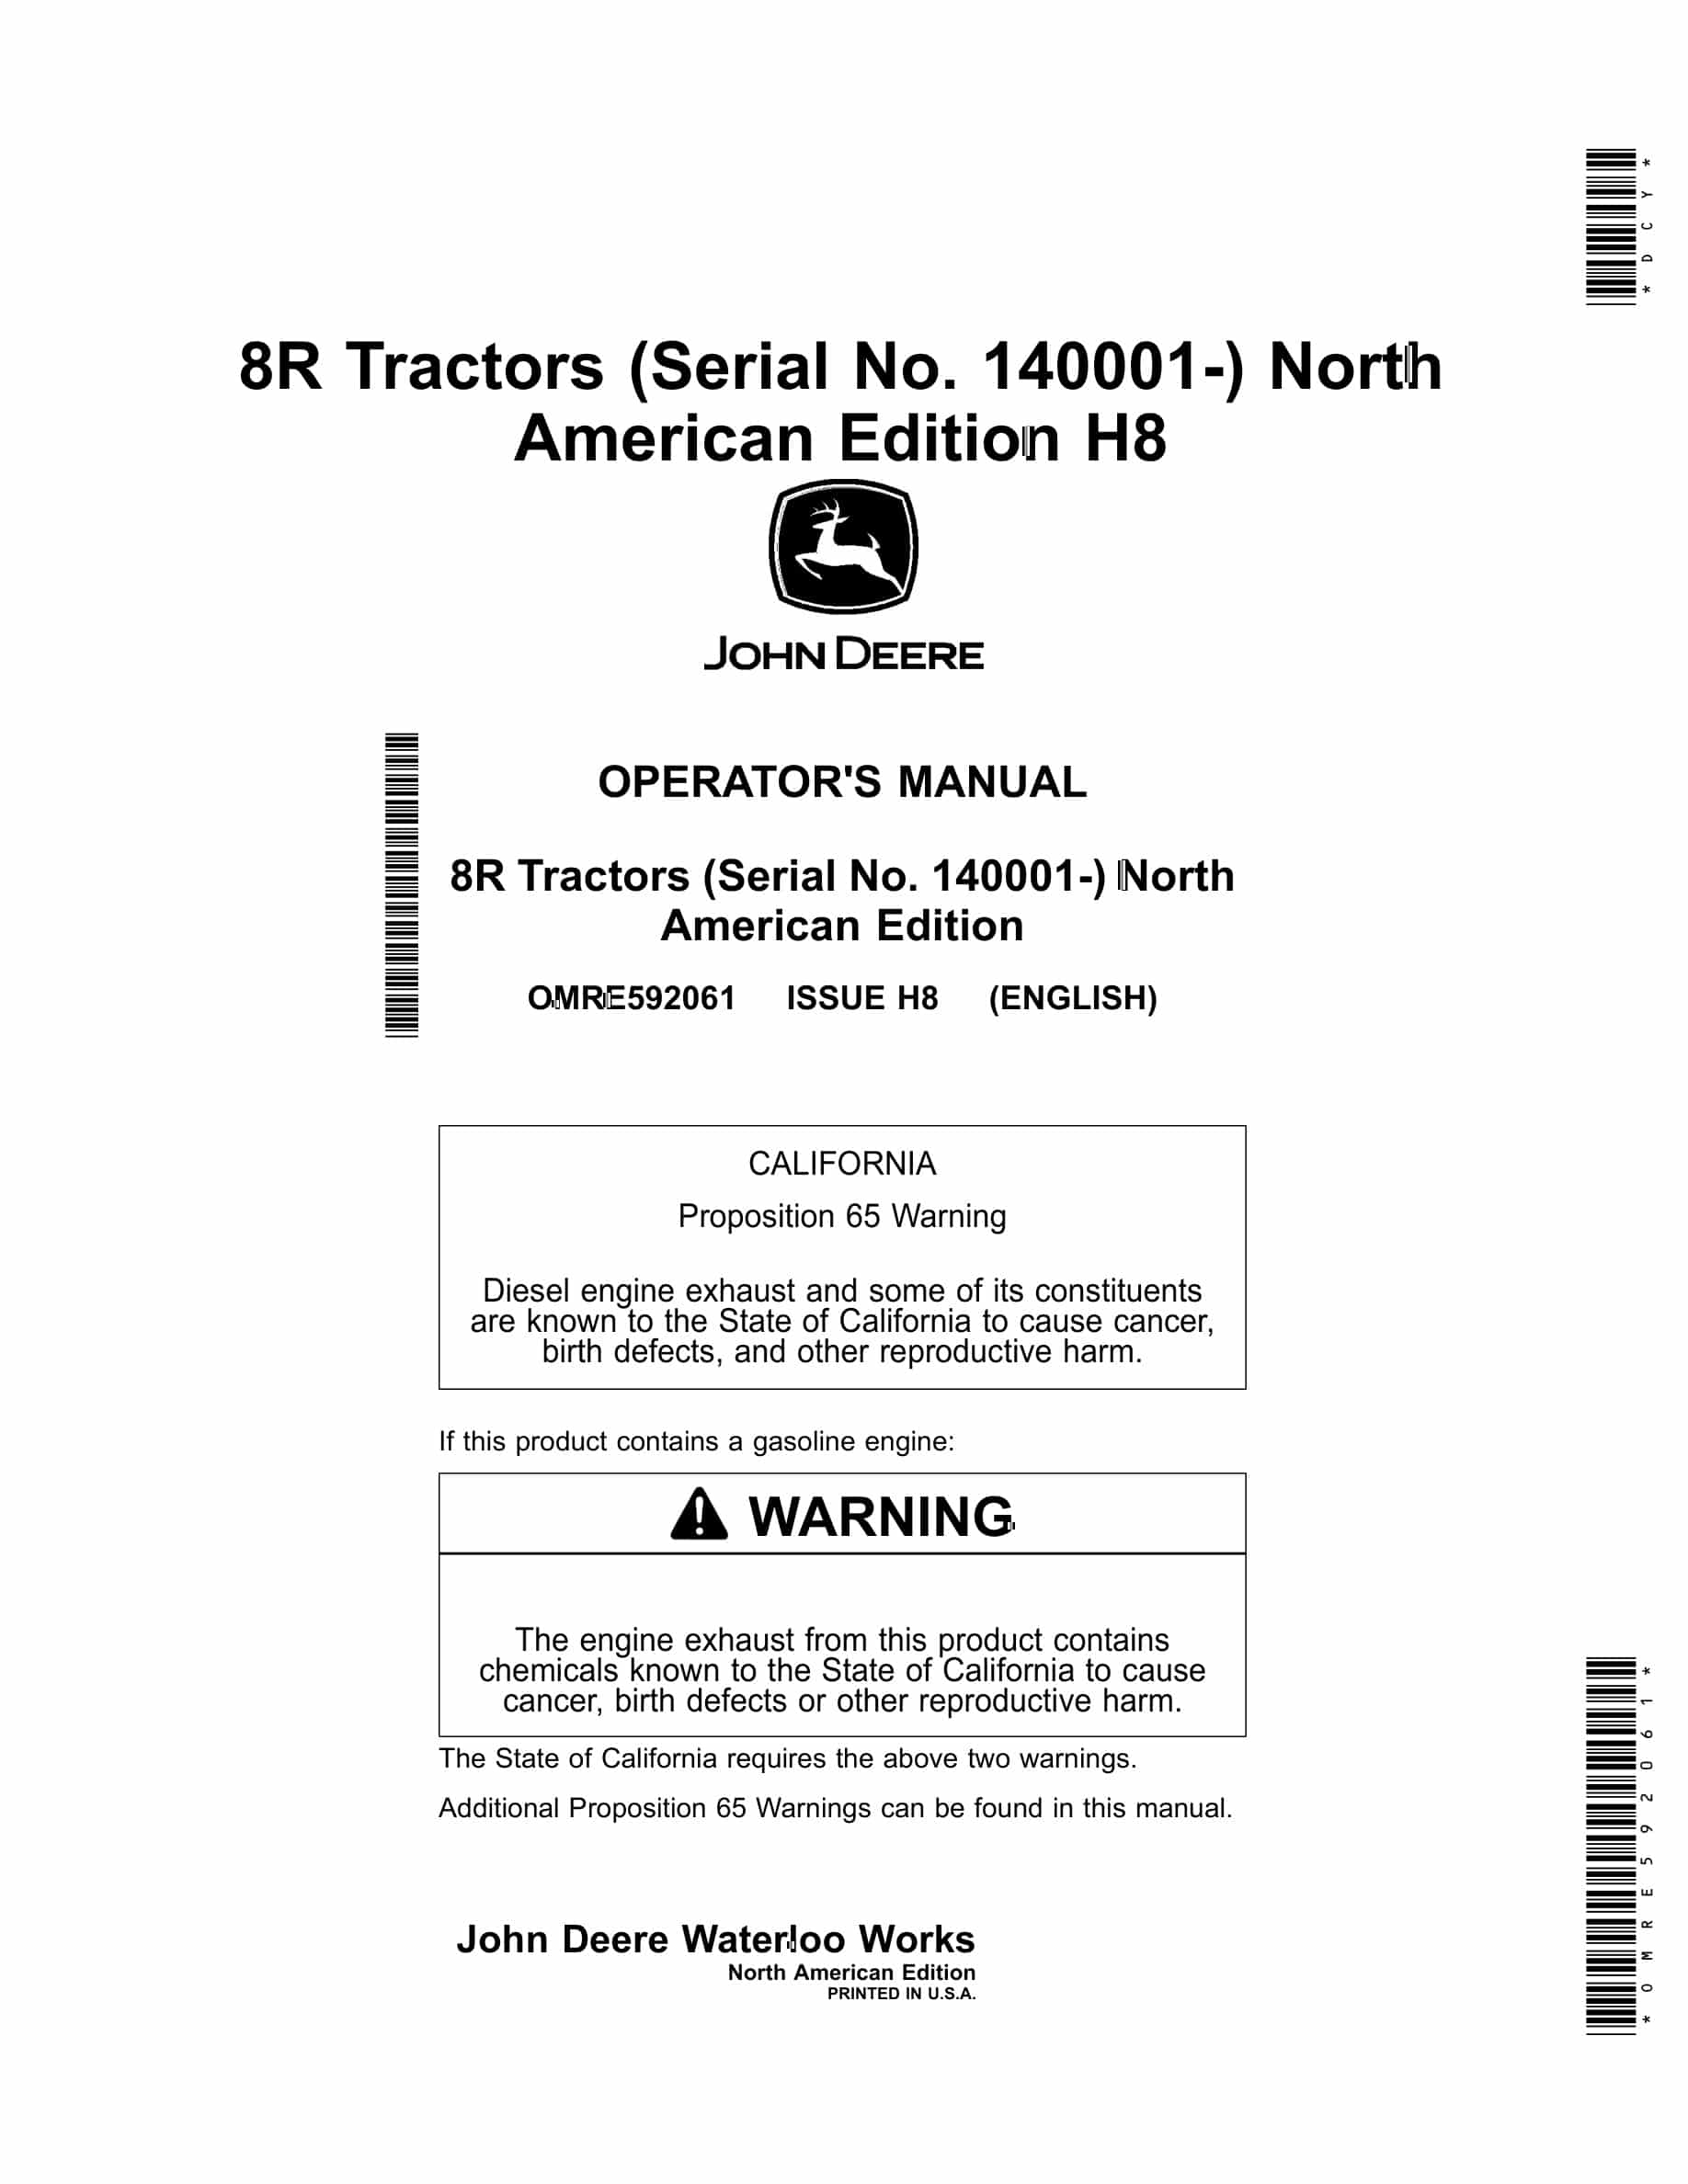 John Deere 8R Tractor Operator Manual OMRE592061-1